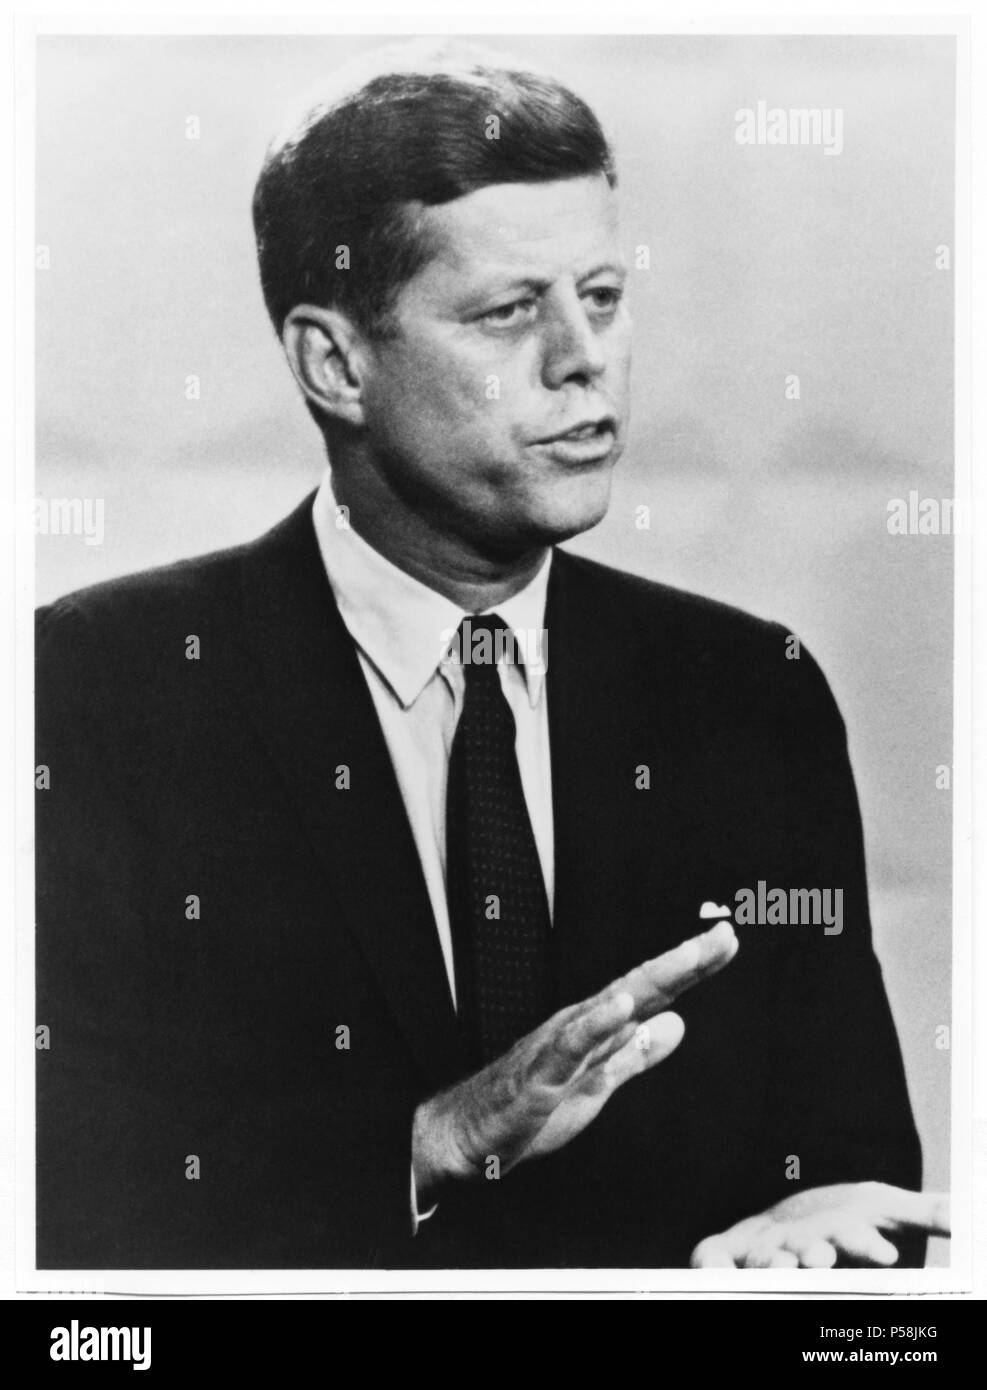 Le sénateur américain John Kennedy, candidat démocrate pour le président américain, au cours de débat télévisé avec Richard Nixon, 1960 Banque D'Images